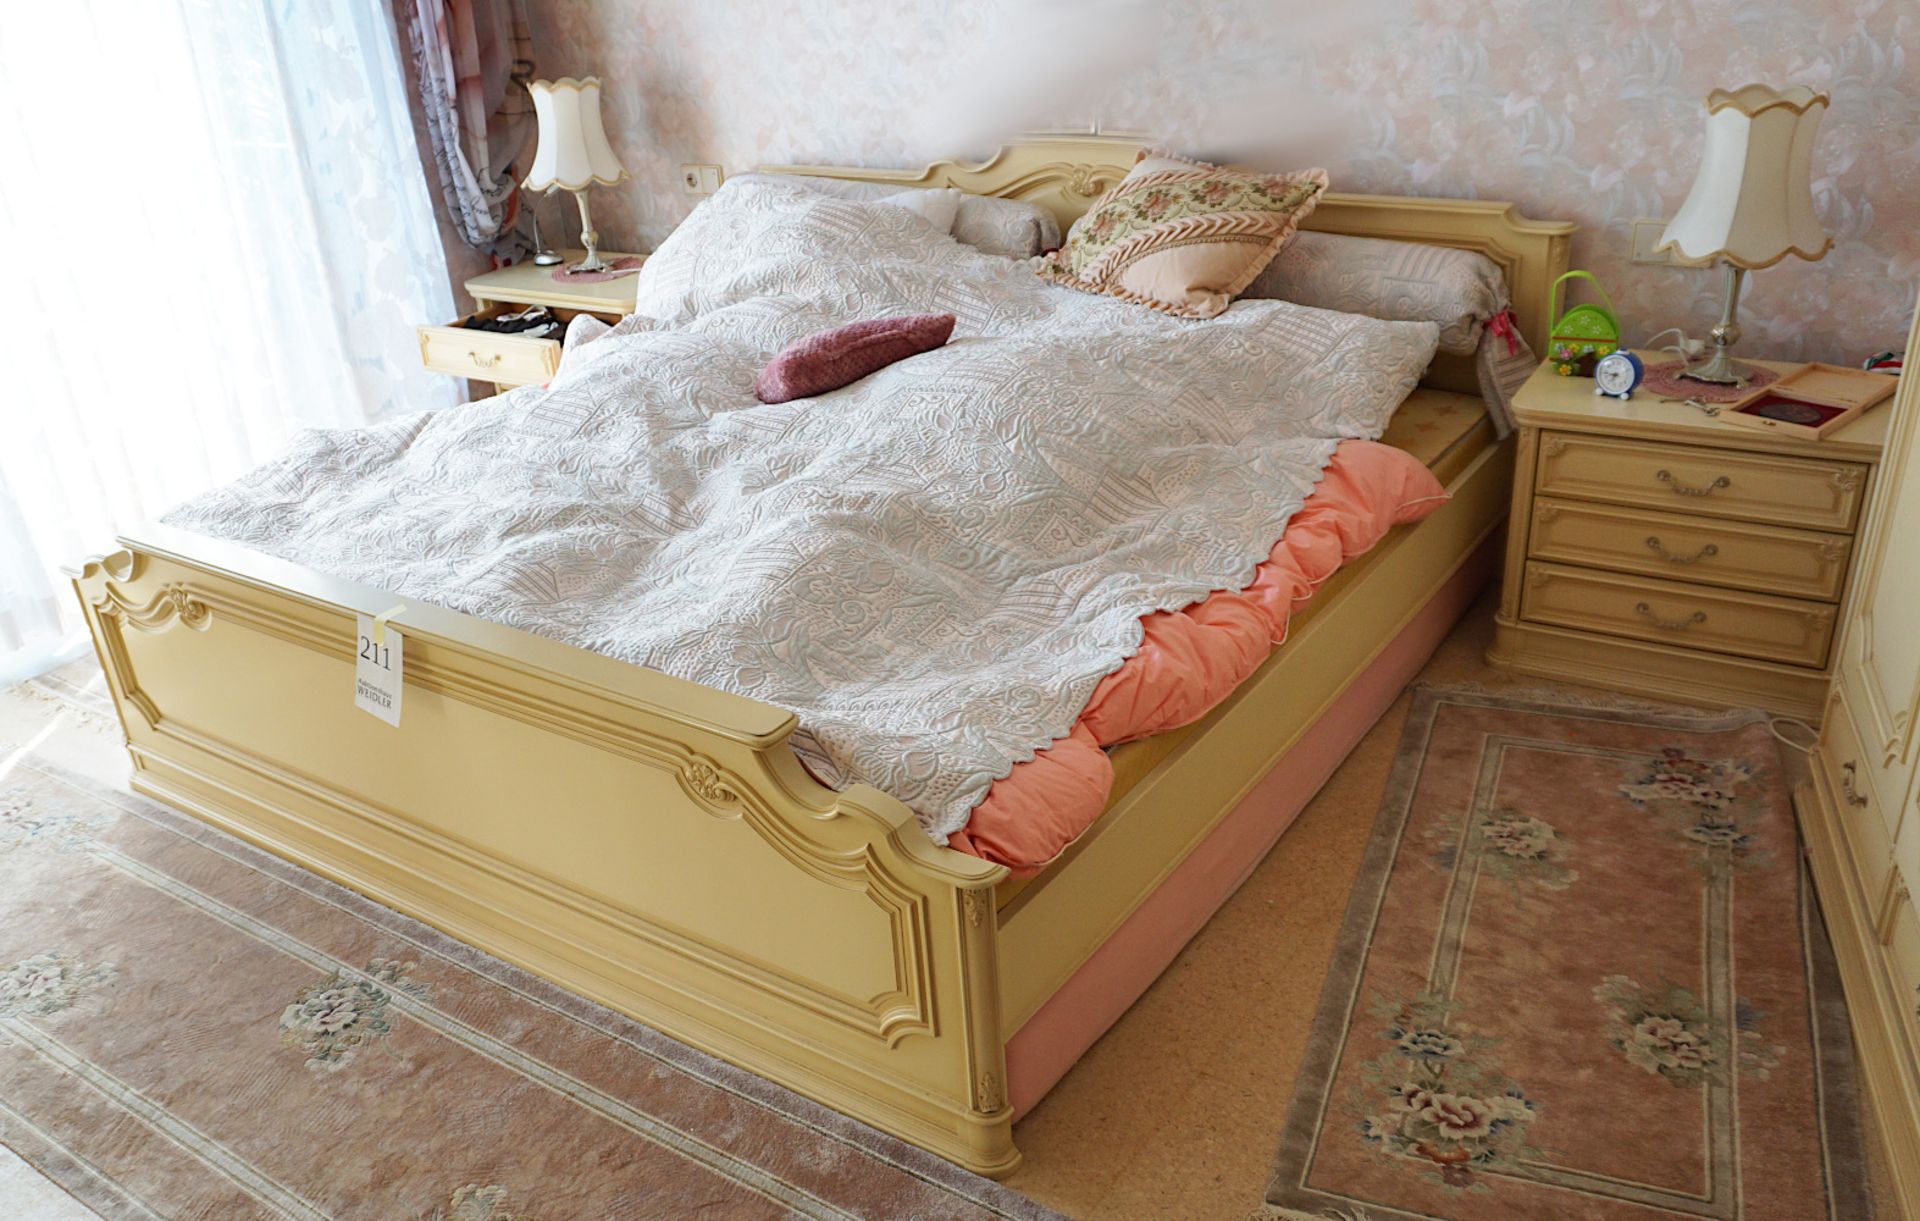 1 Stil-Schlafzimmer, Elfenbein-Farben, Schrankwand, Bett, Wäscheschränke, Vorhänge, Teppiche und Läu